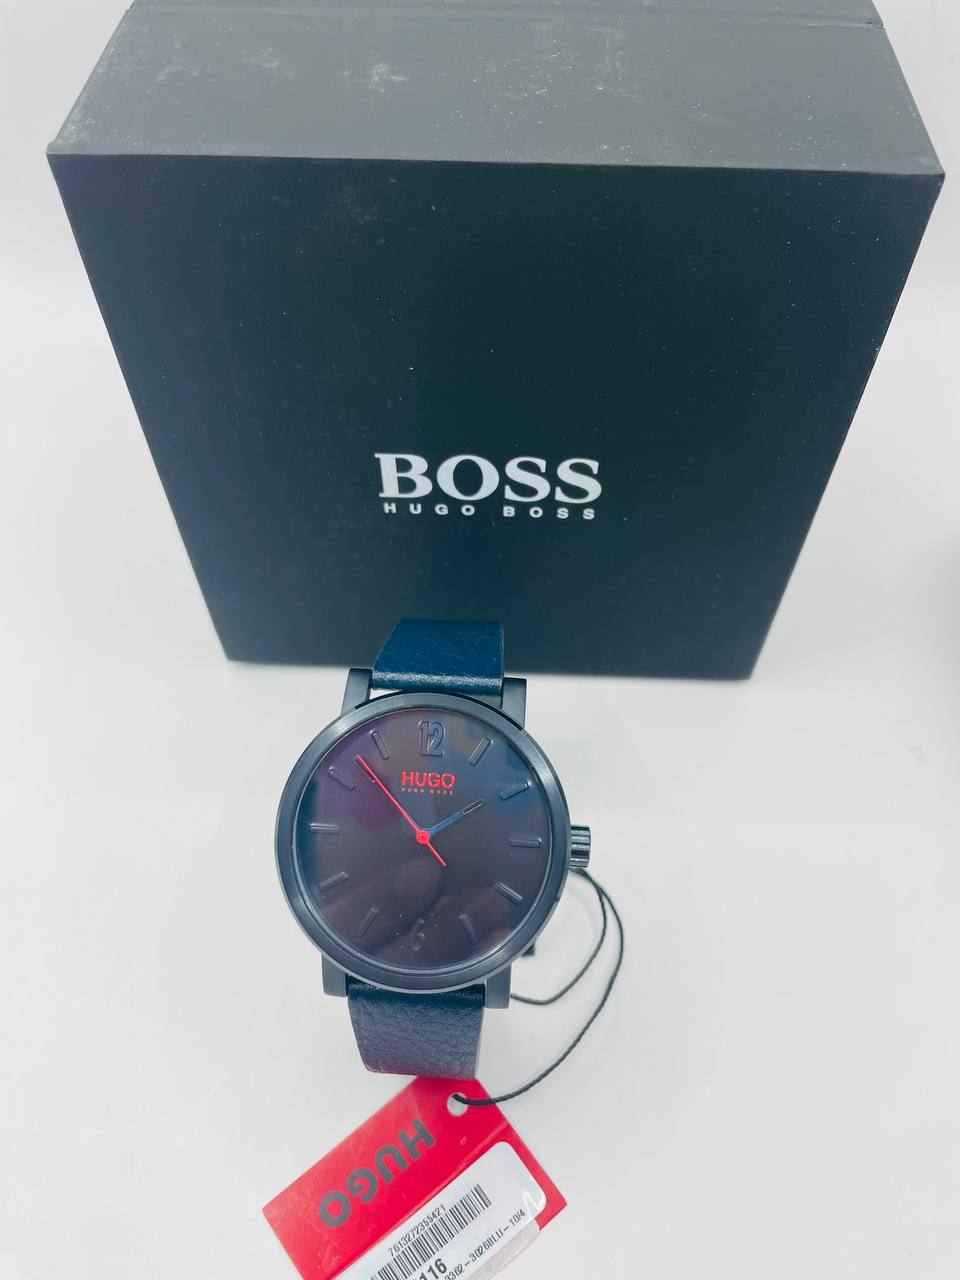 Boss watch